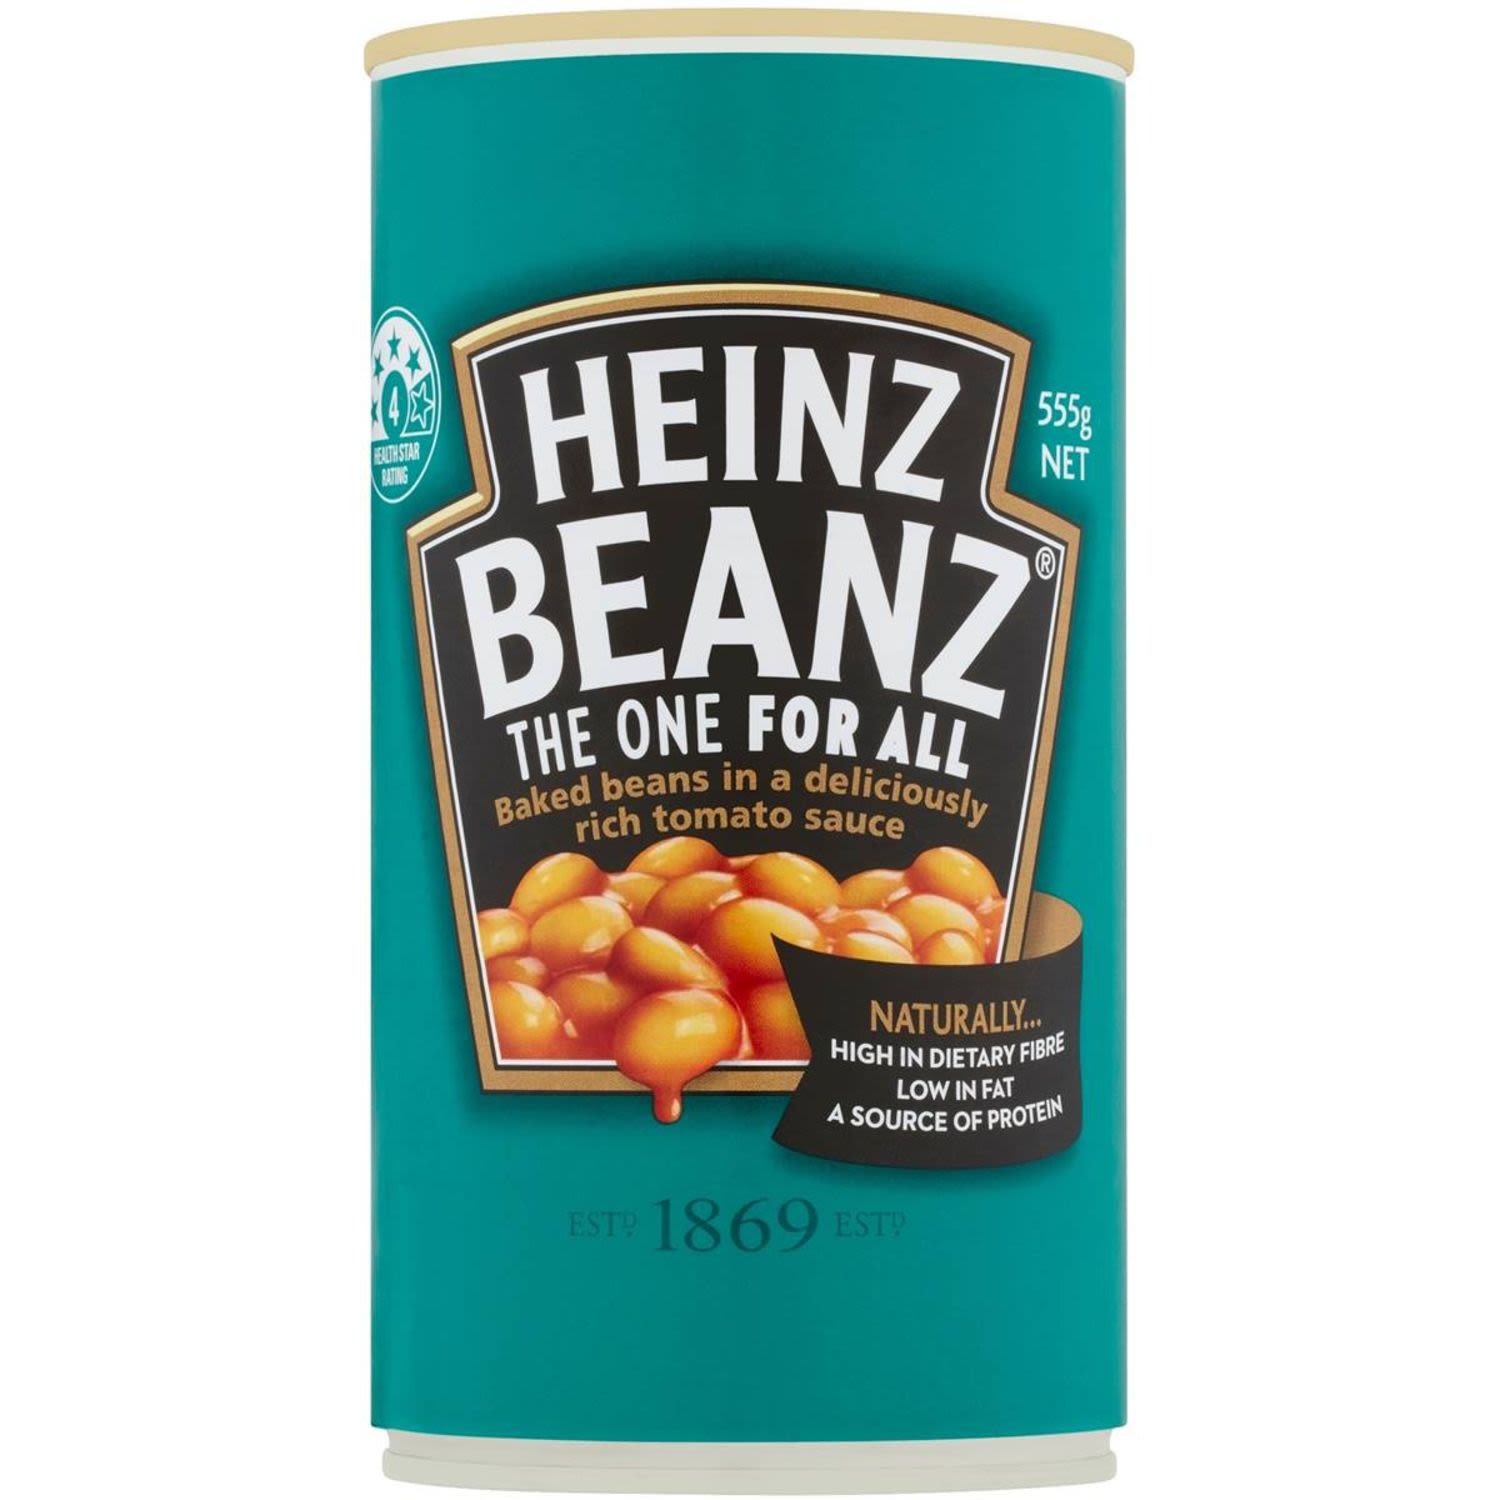 Heinz Baked Beans Tomato Sauce, 555 Gram